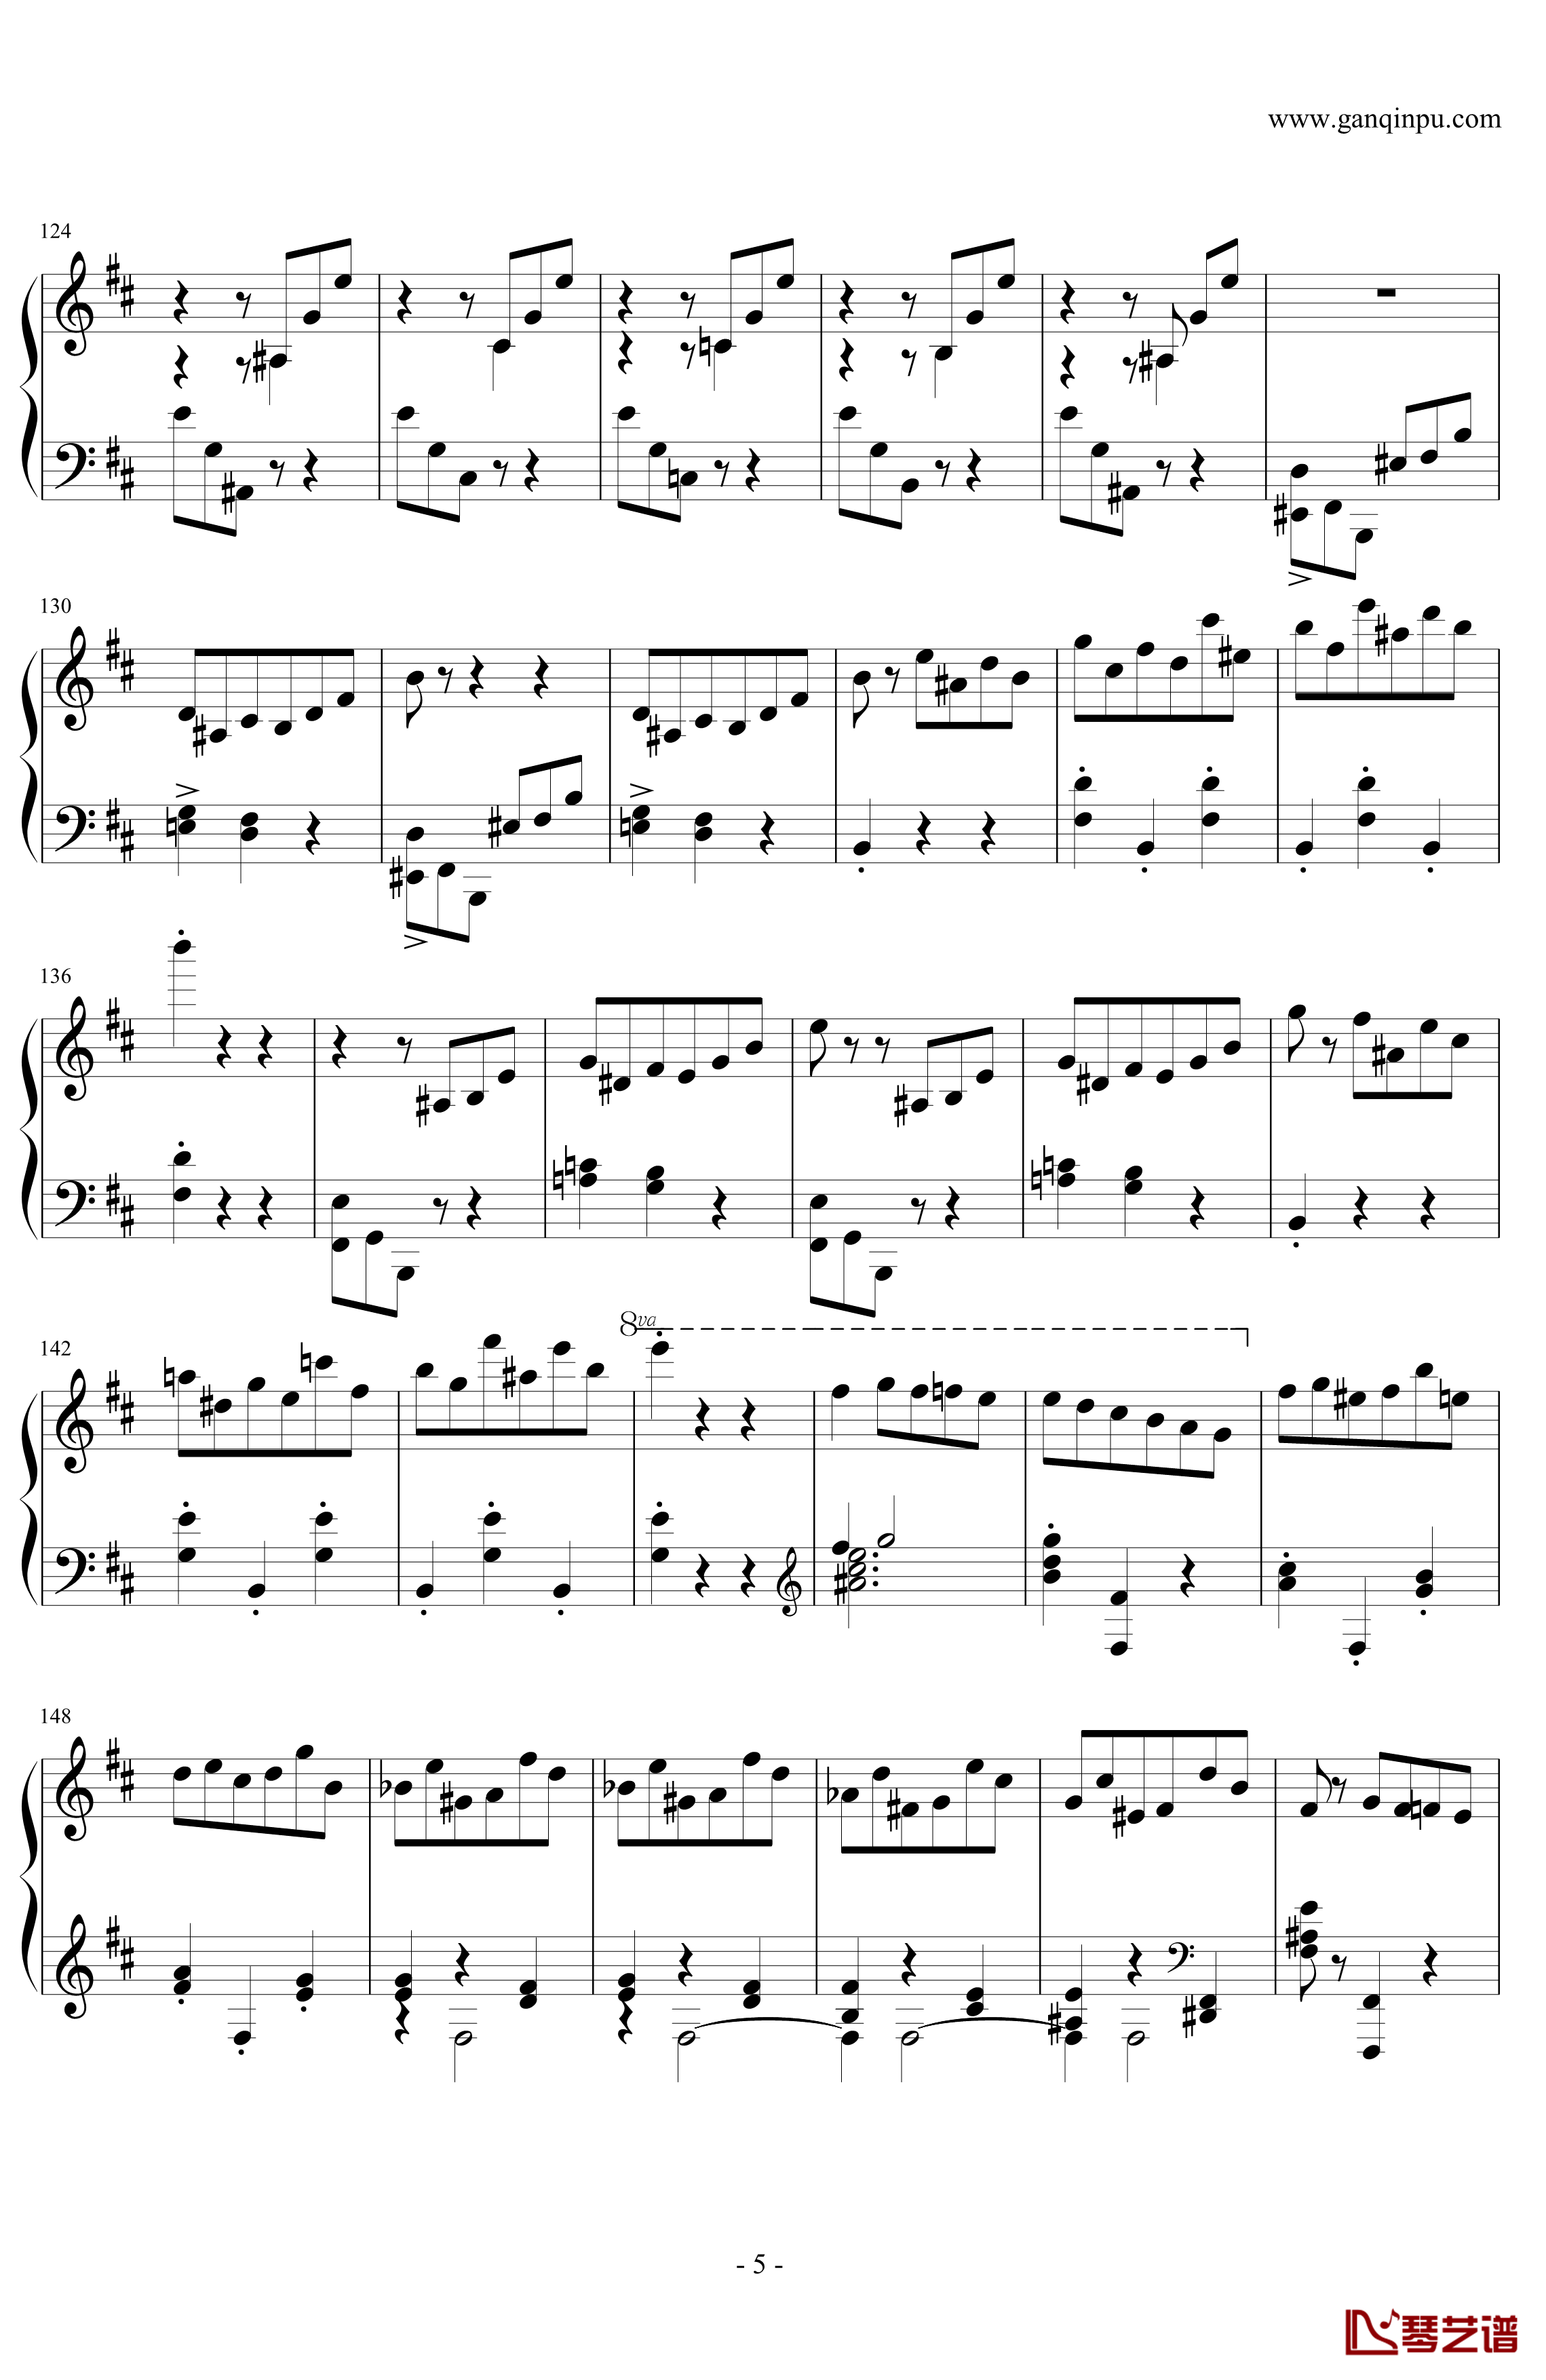 肖邦第一谐谑曲钢琴谱-肖邦-chopin5